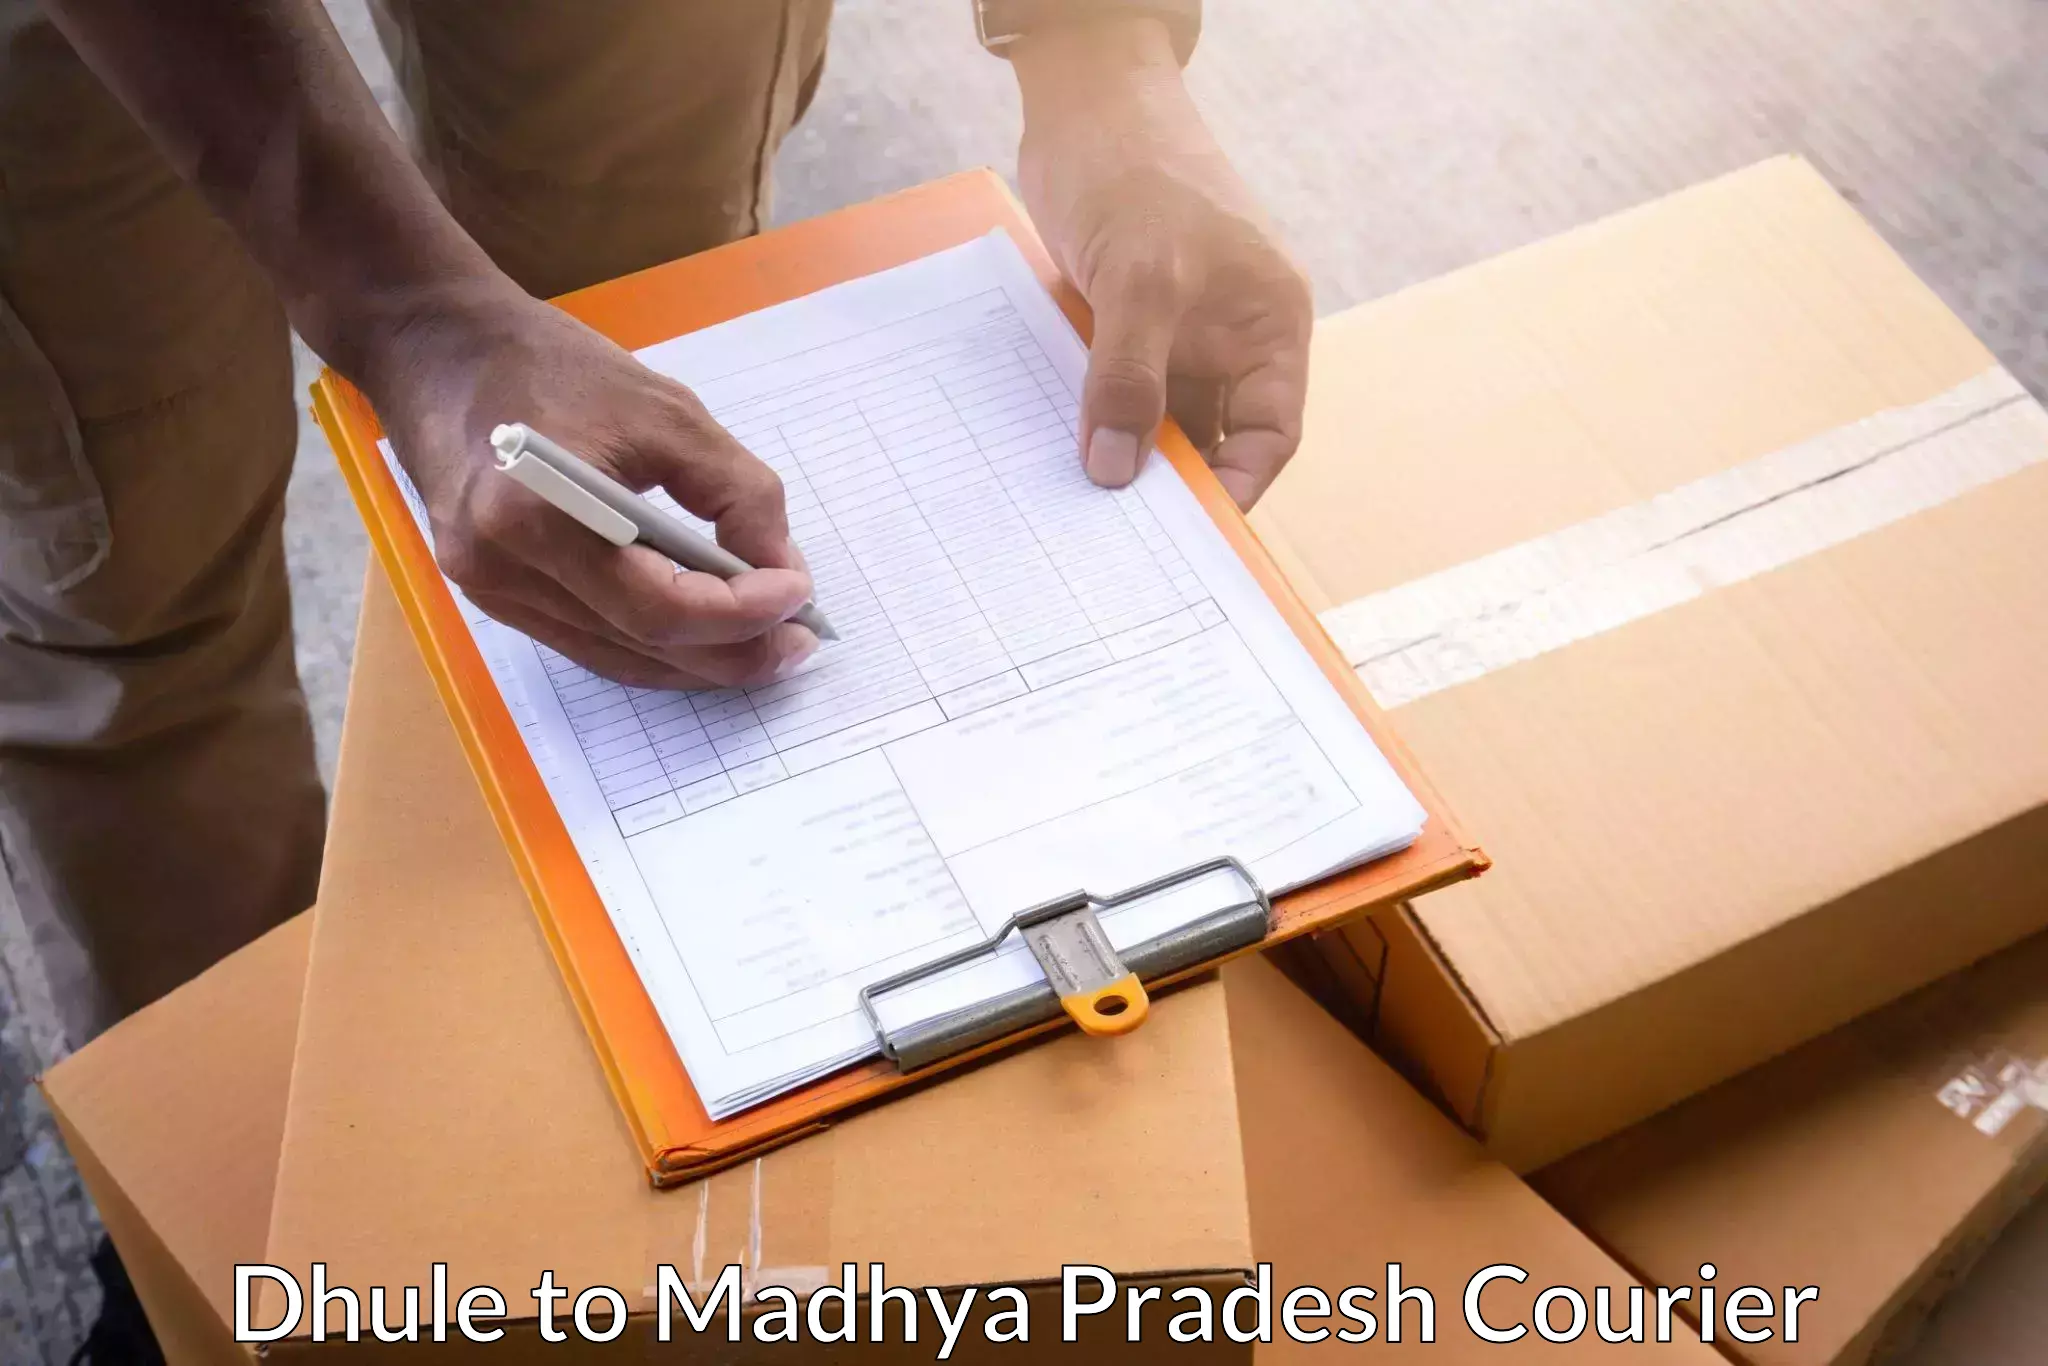 Door-to-door shipment Dhule to IIIT Bhopal